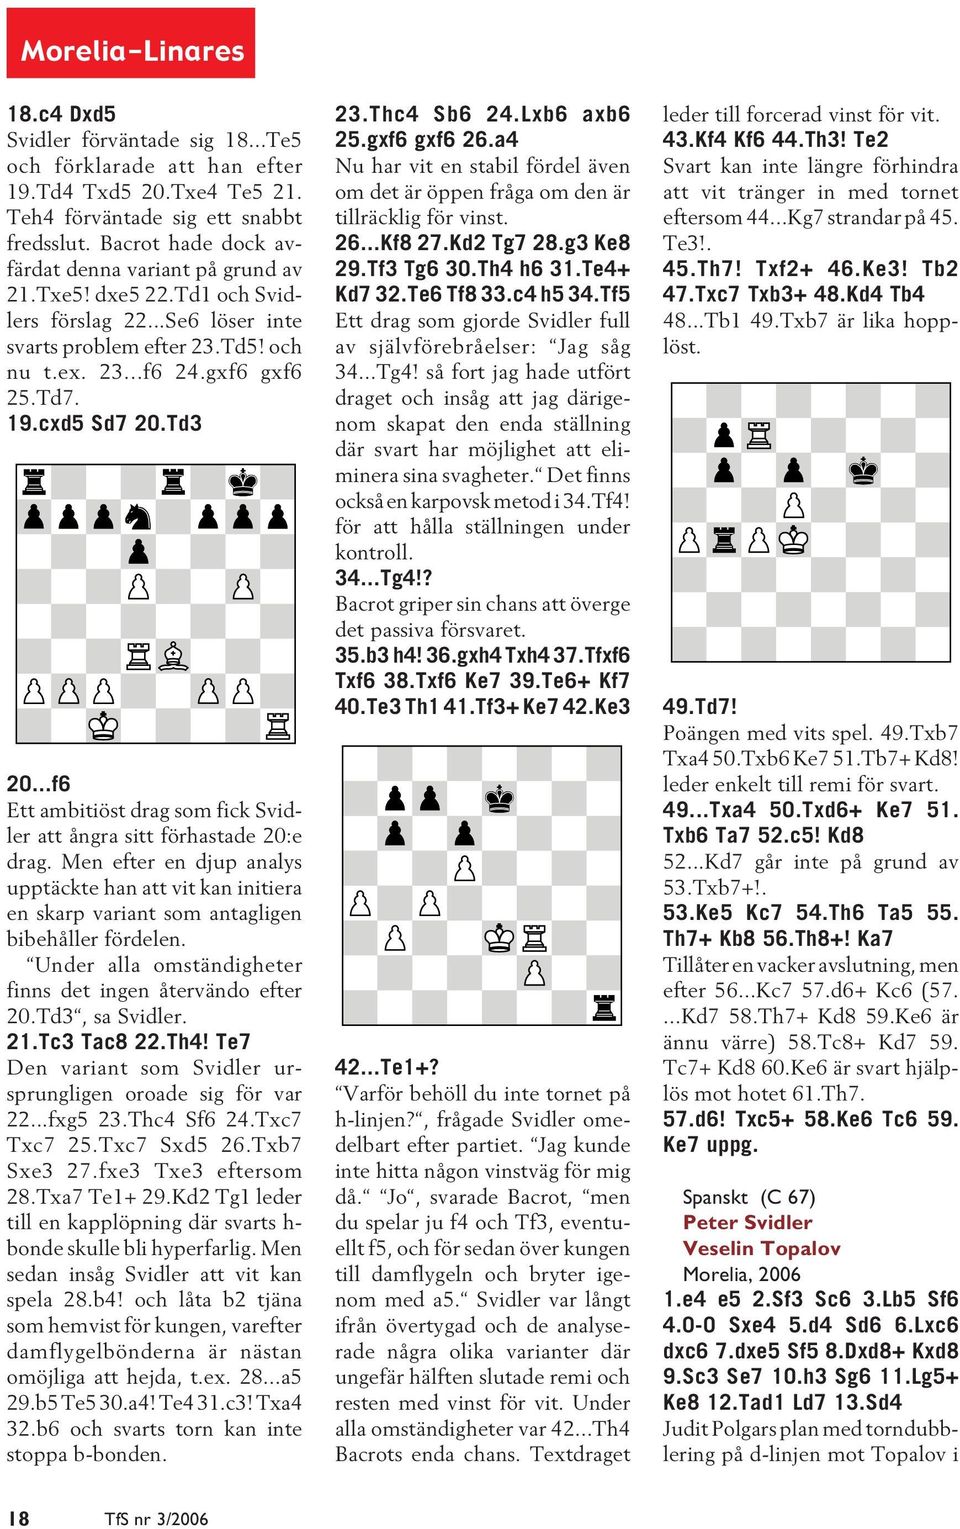 Td3 20...f6 Ett ambitiöst drag som fick Svidler att ångra sitt förhastade 20:e drag. Men efter en djup analys upptäckte han att vit kan initiera en skarp variant som antagligen bibehåller fördelen.